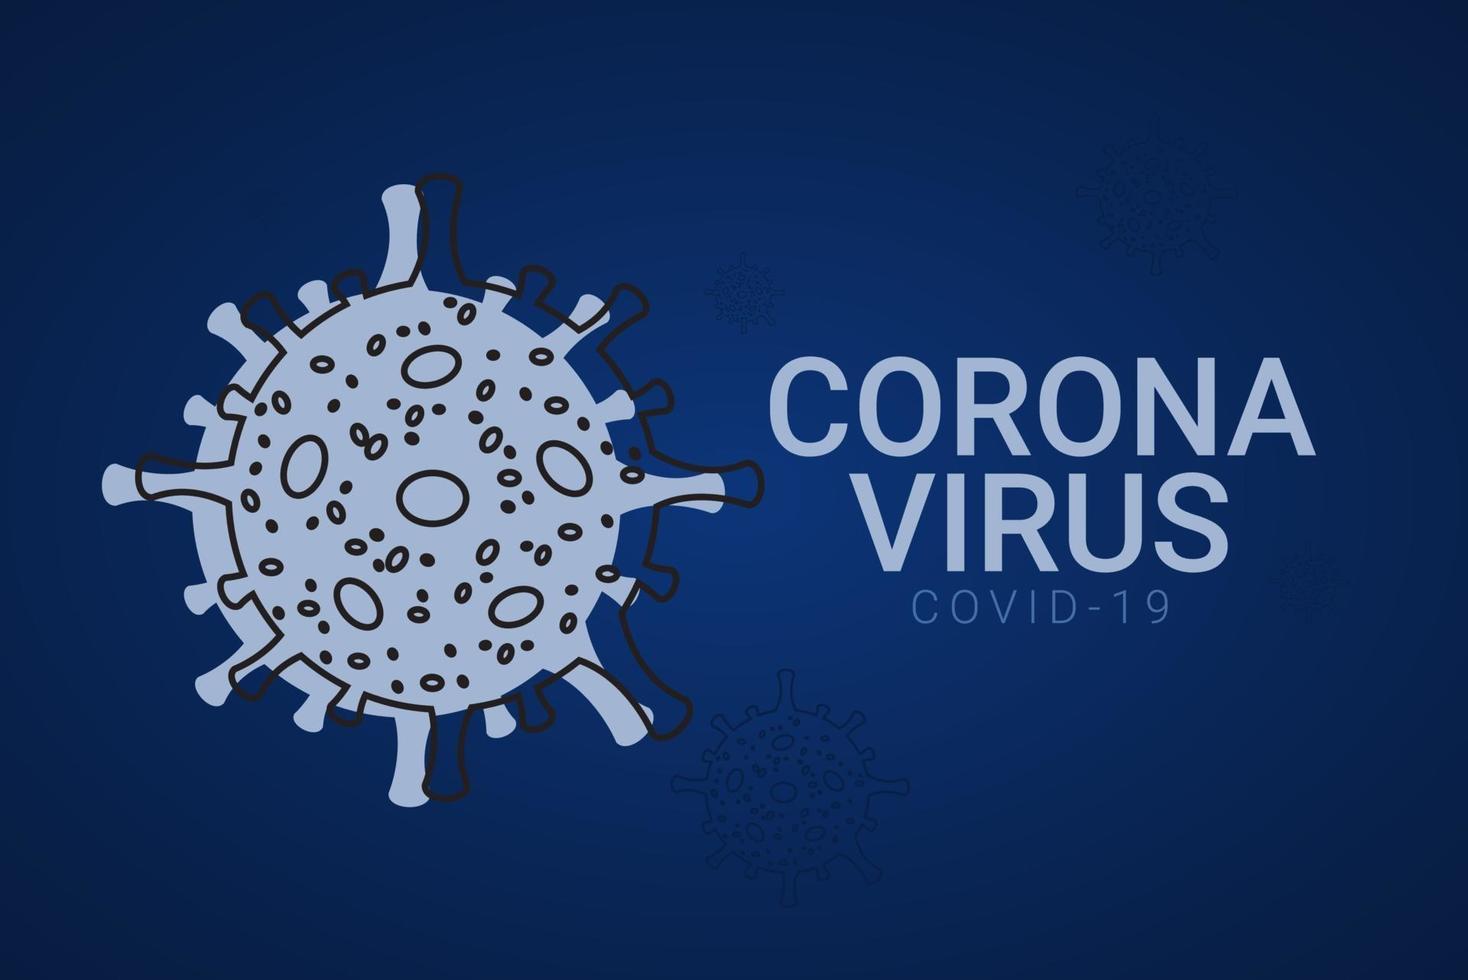 illustrazione di progettazione del modello di vettore del virus corona covid-19